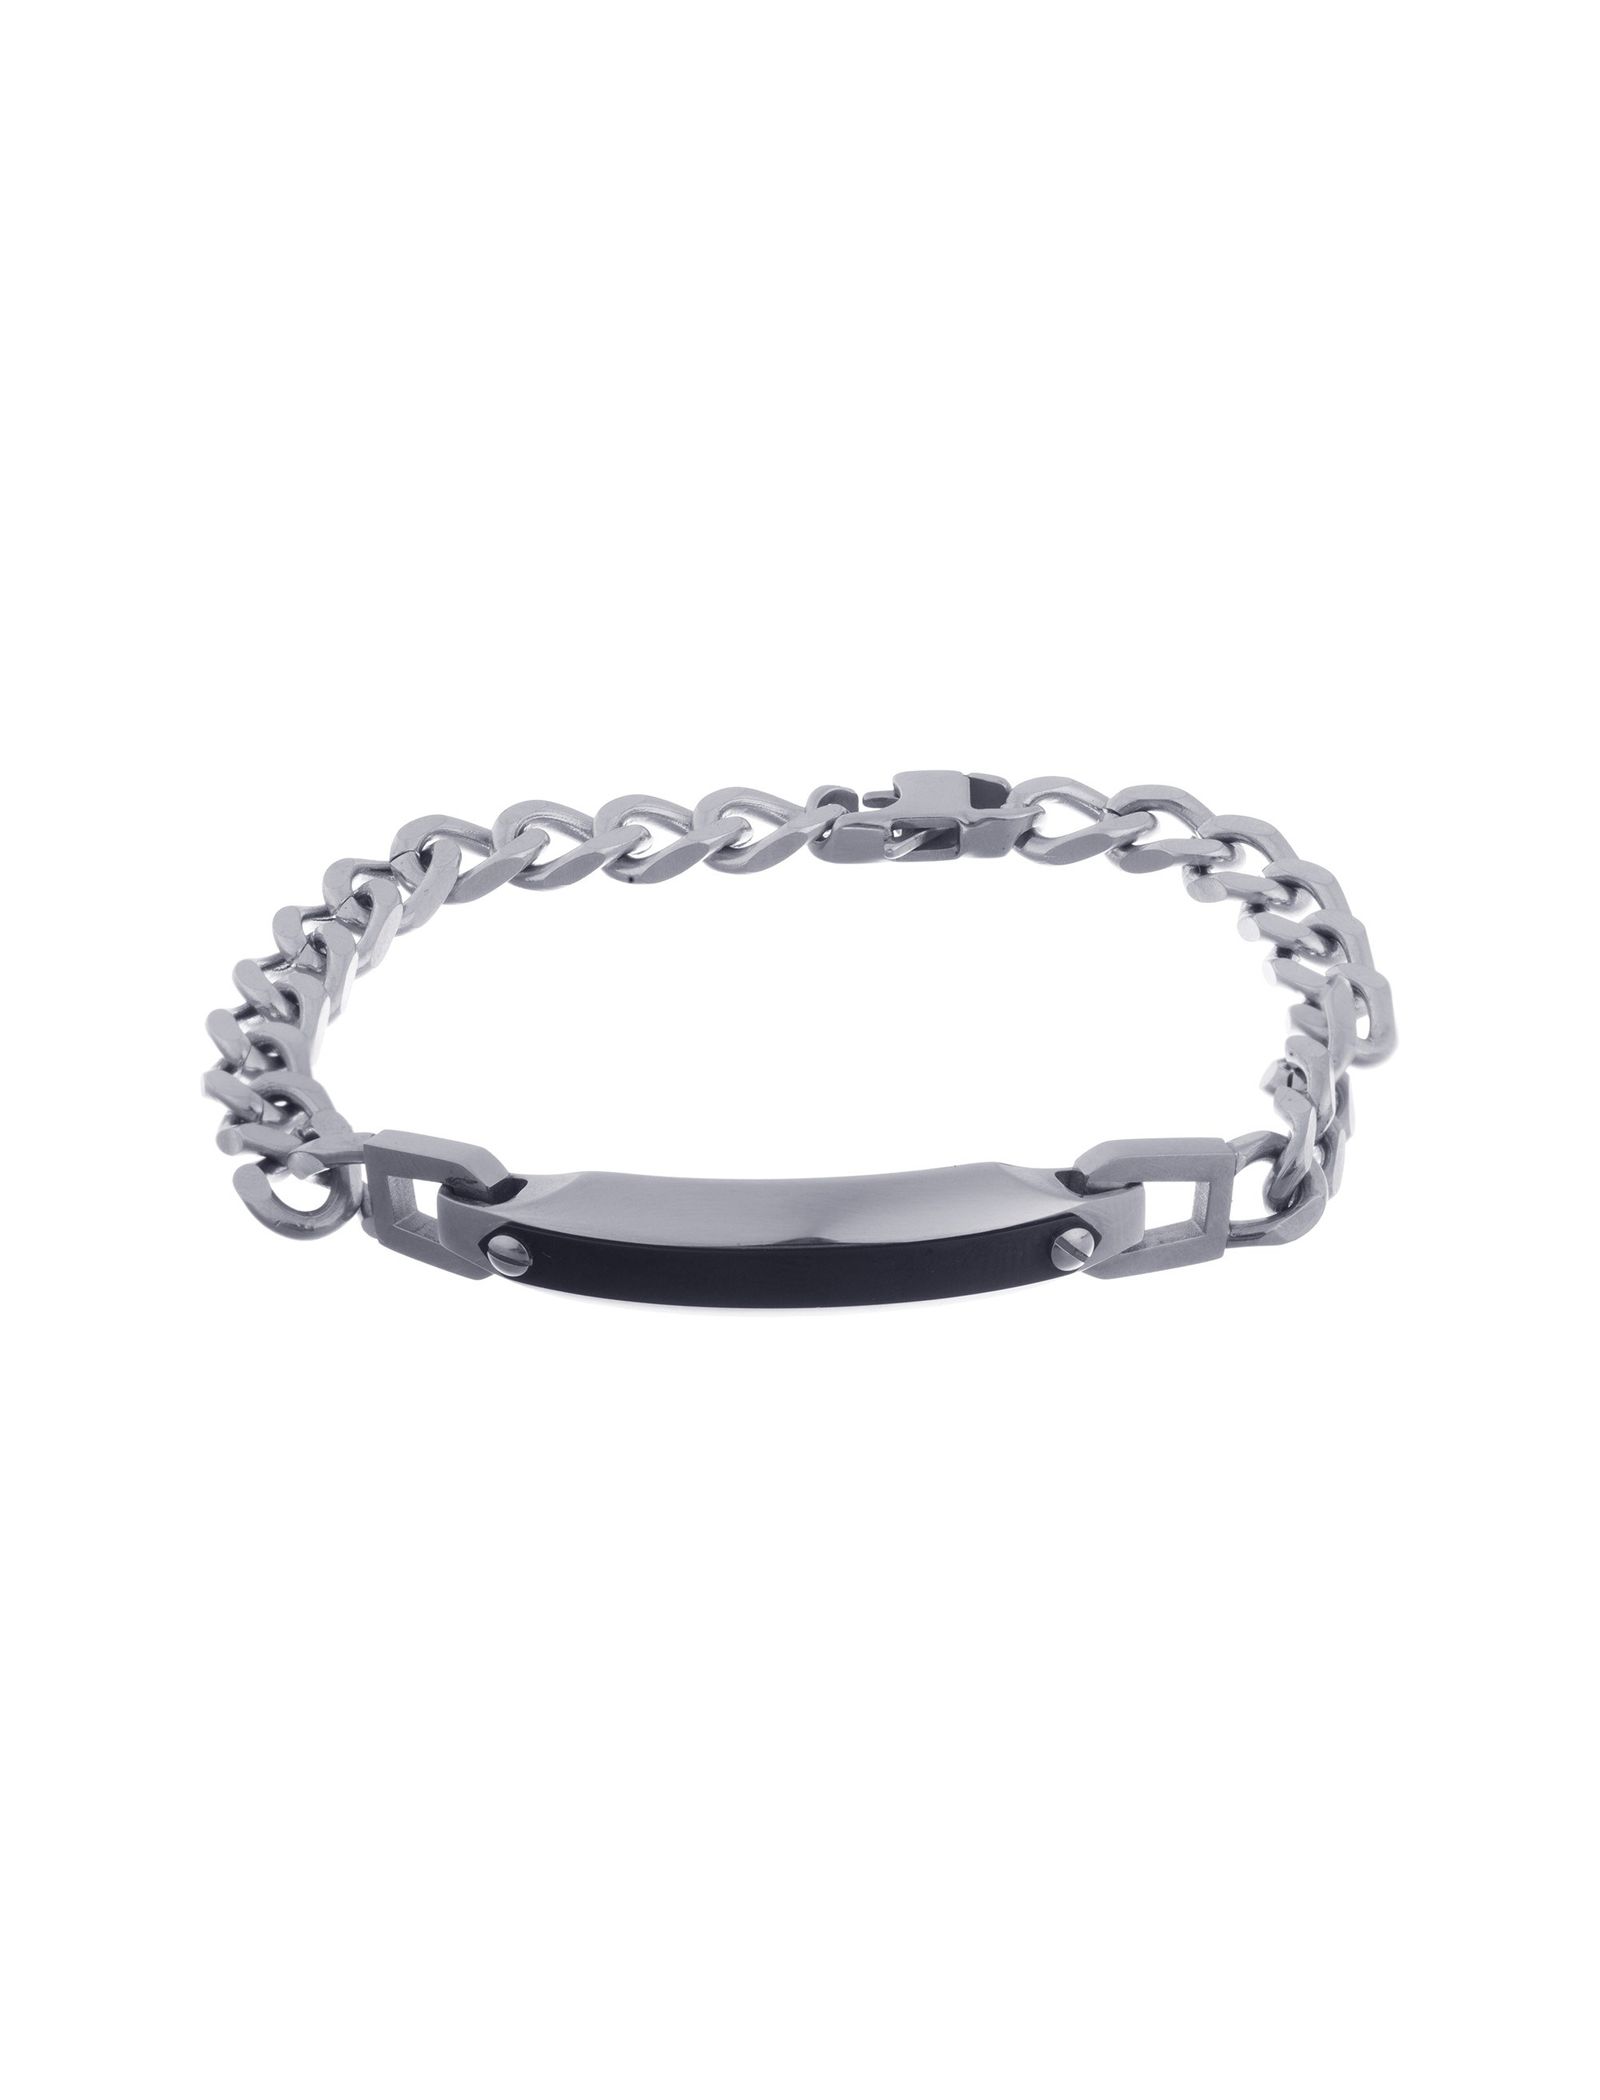 دستبند زنجیری مردانه - برازوی - Silver - 2